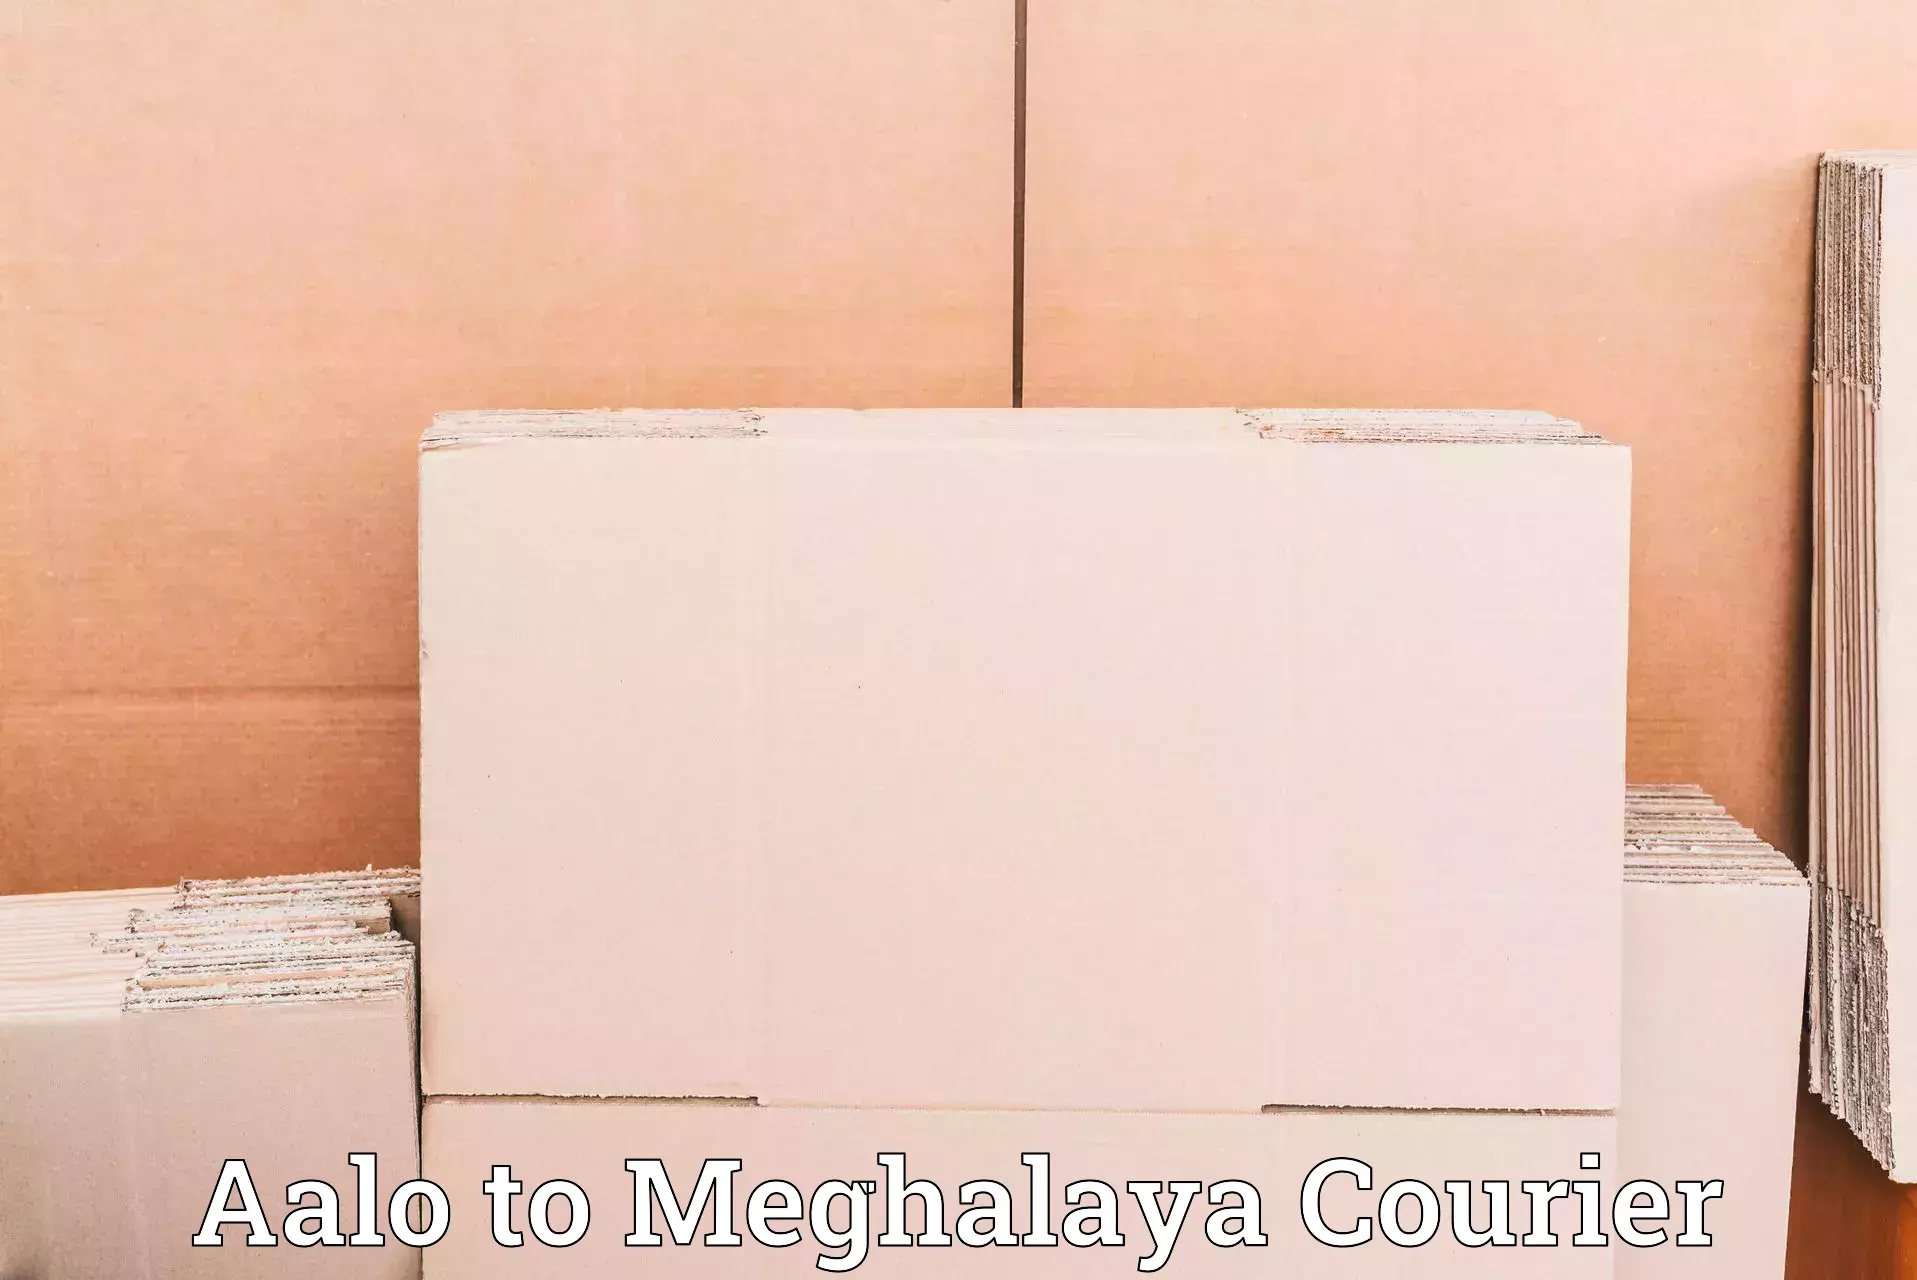 Global logistics network Aalo to Meghalaya